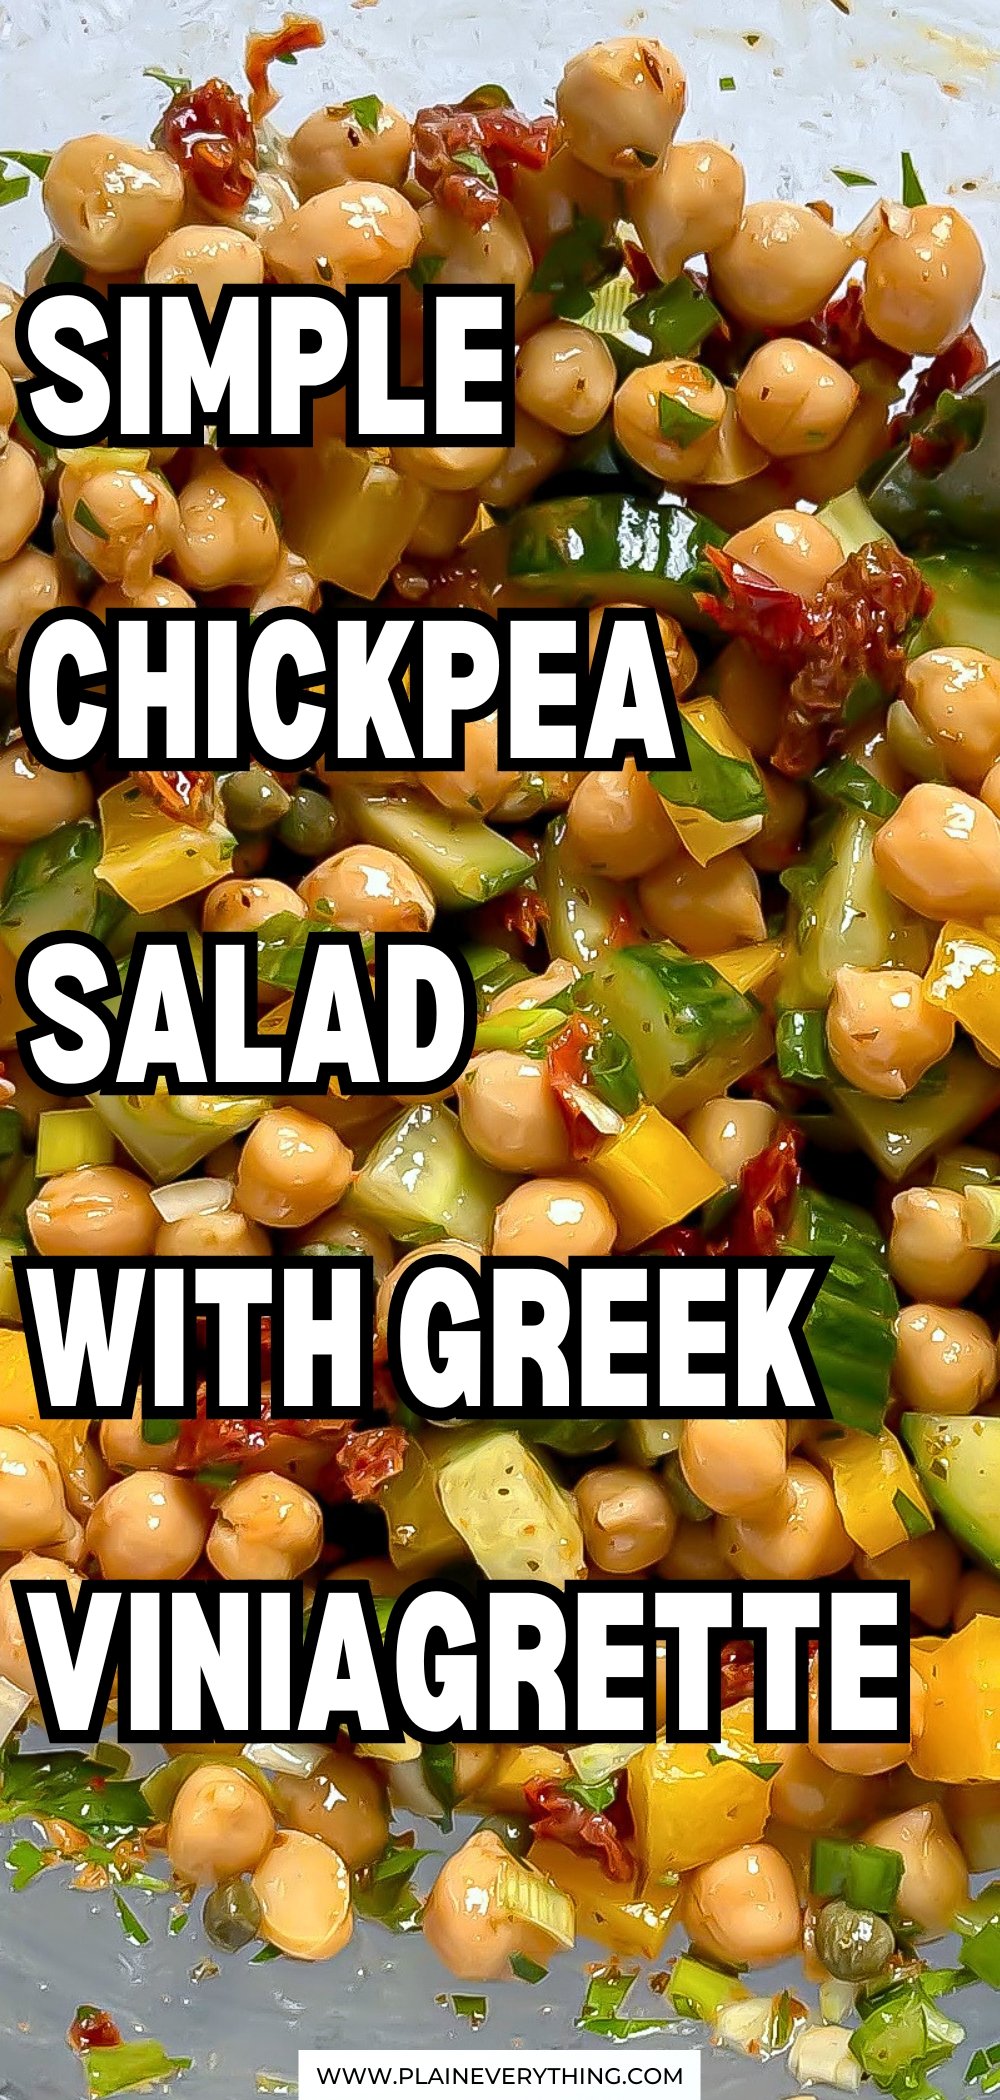 Simple Chickpea Salad With Greek Vinaigrette